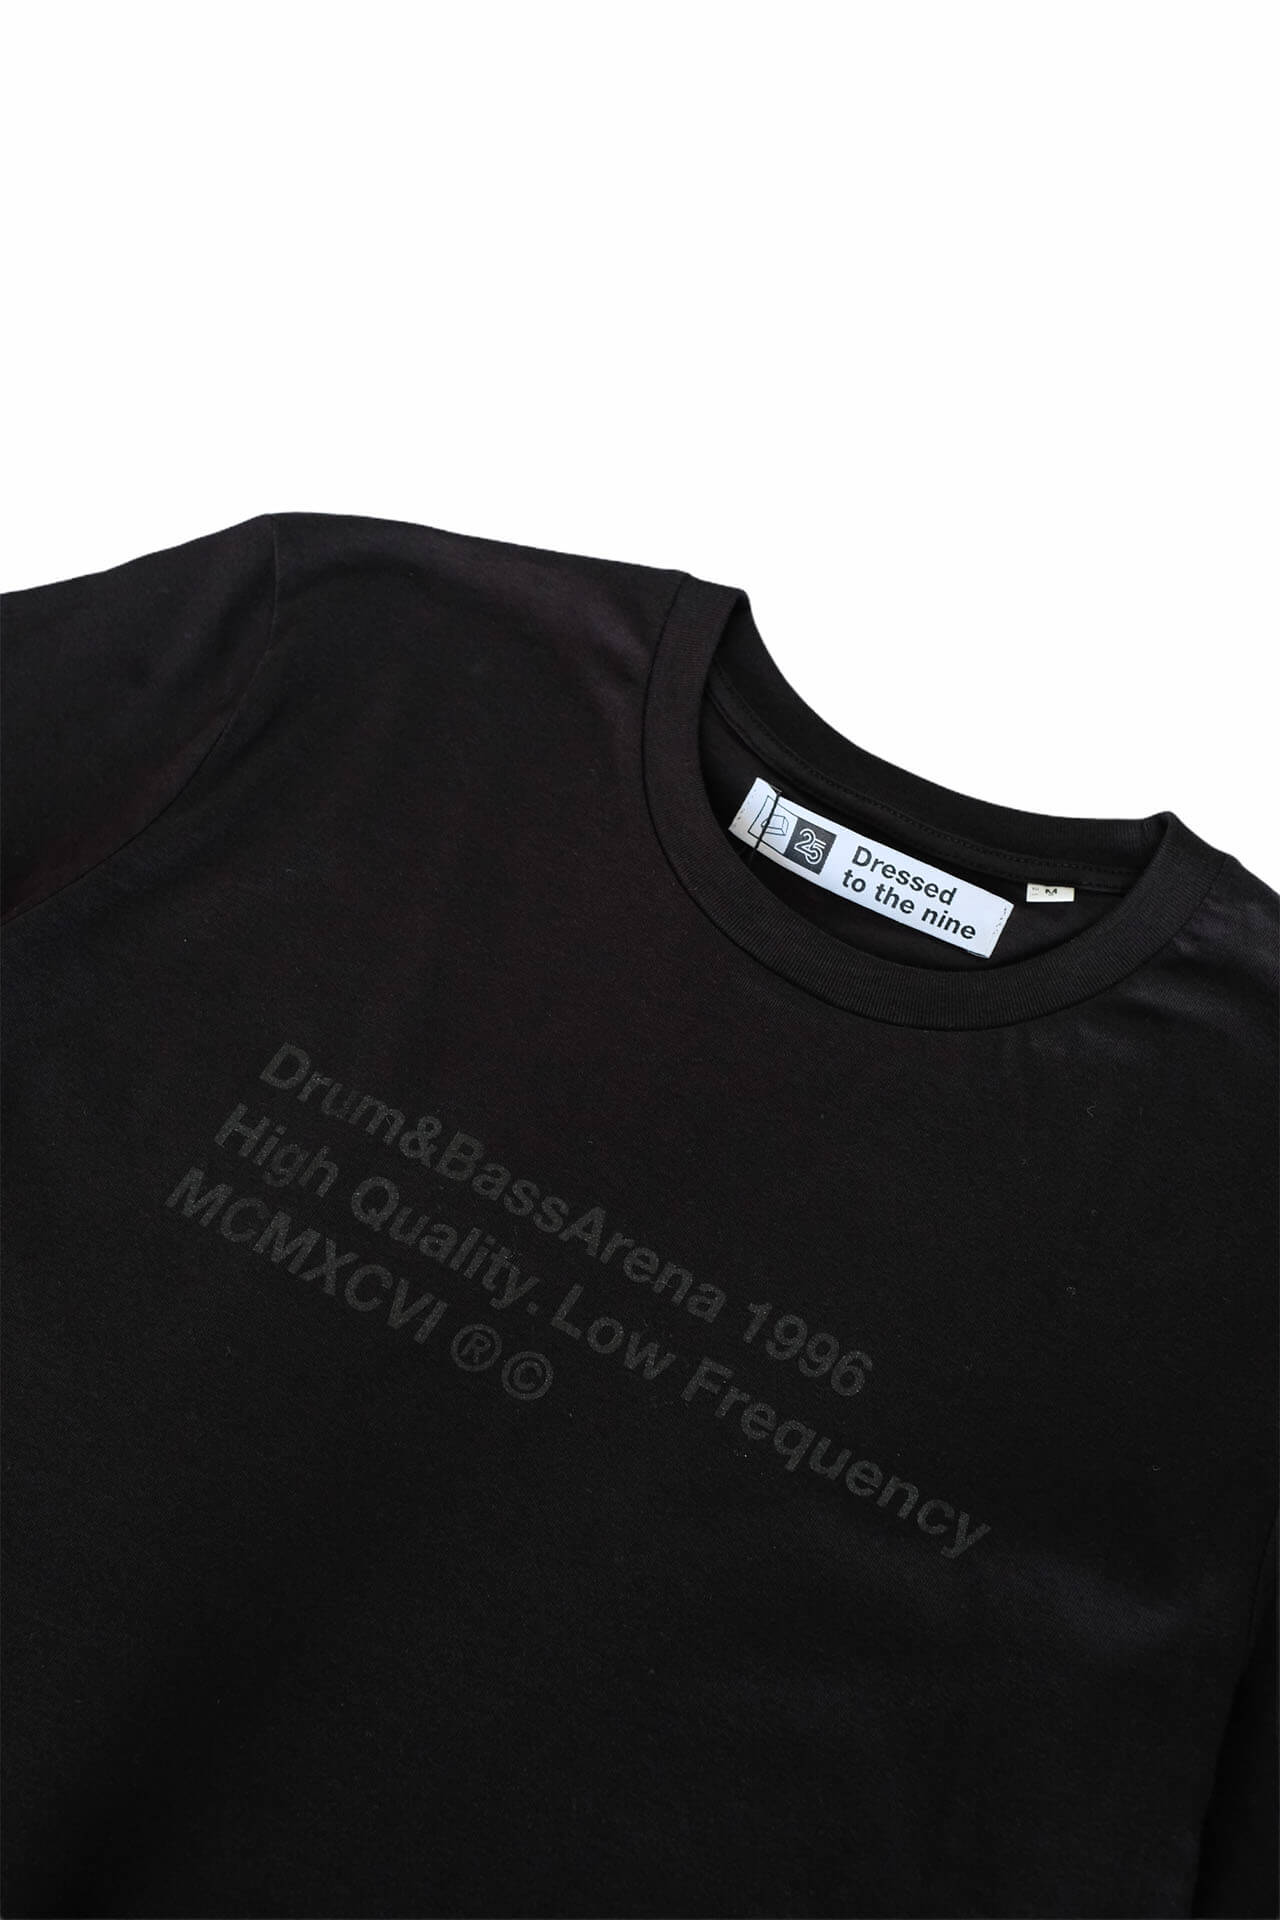 Edición limitada de la camiseta Stealth 25 años (unisex)